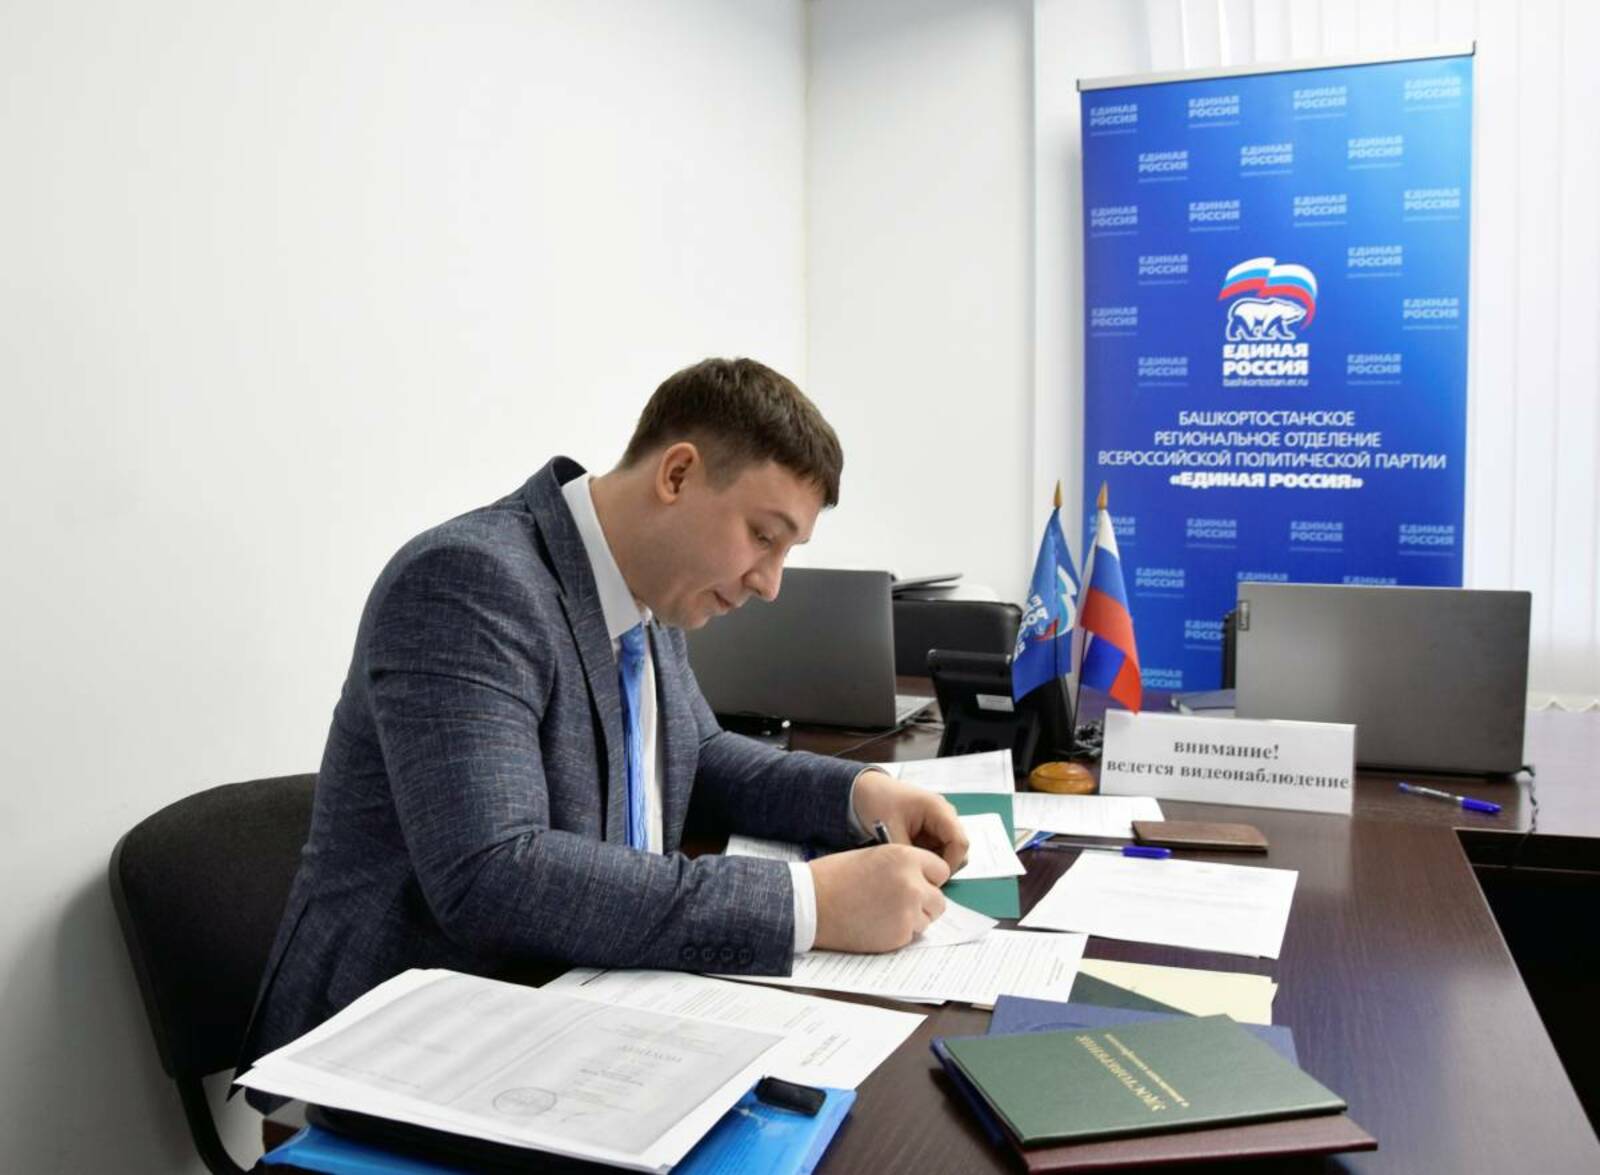 Яков Кугубаев подал документы на регистрацию в качестве участника предварительного голосования